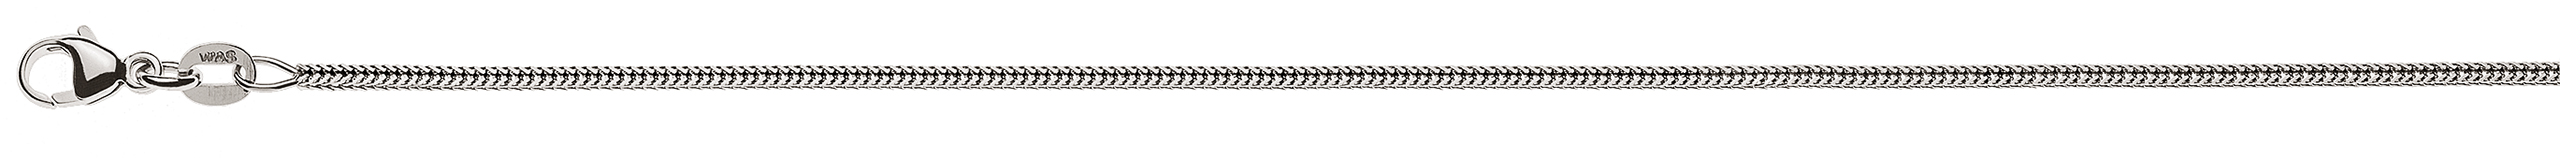 AURONOS Prestige Necklace white gold 18K foxtail diamond 38cm 1.2mm